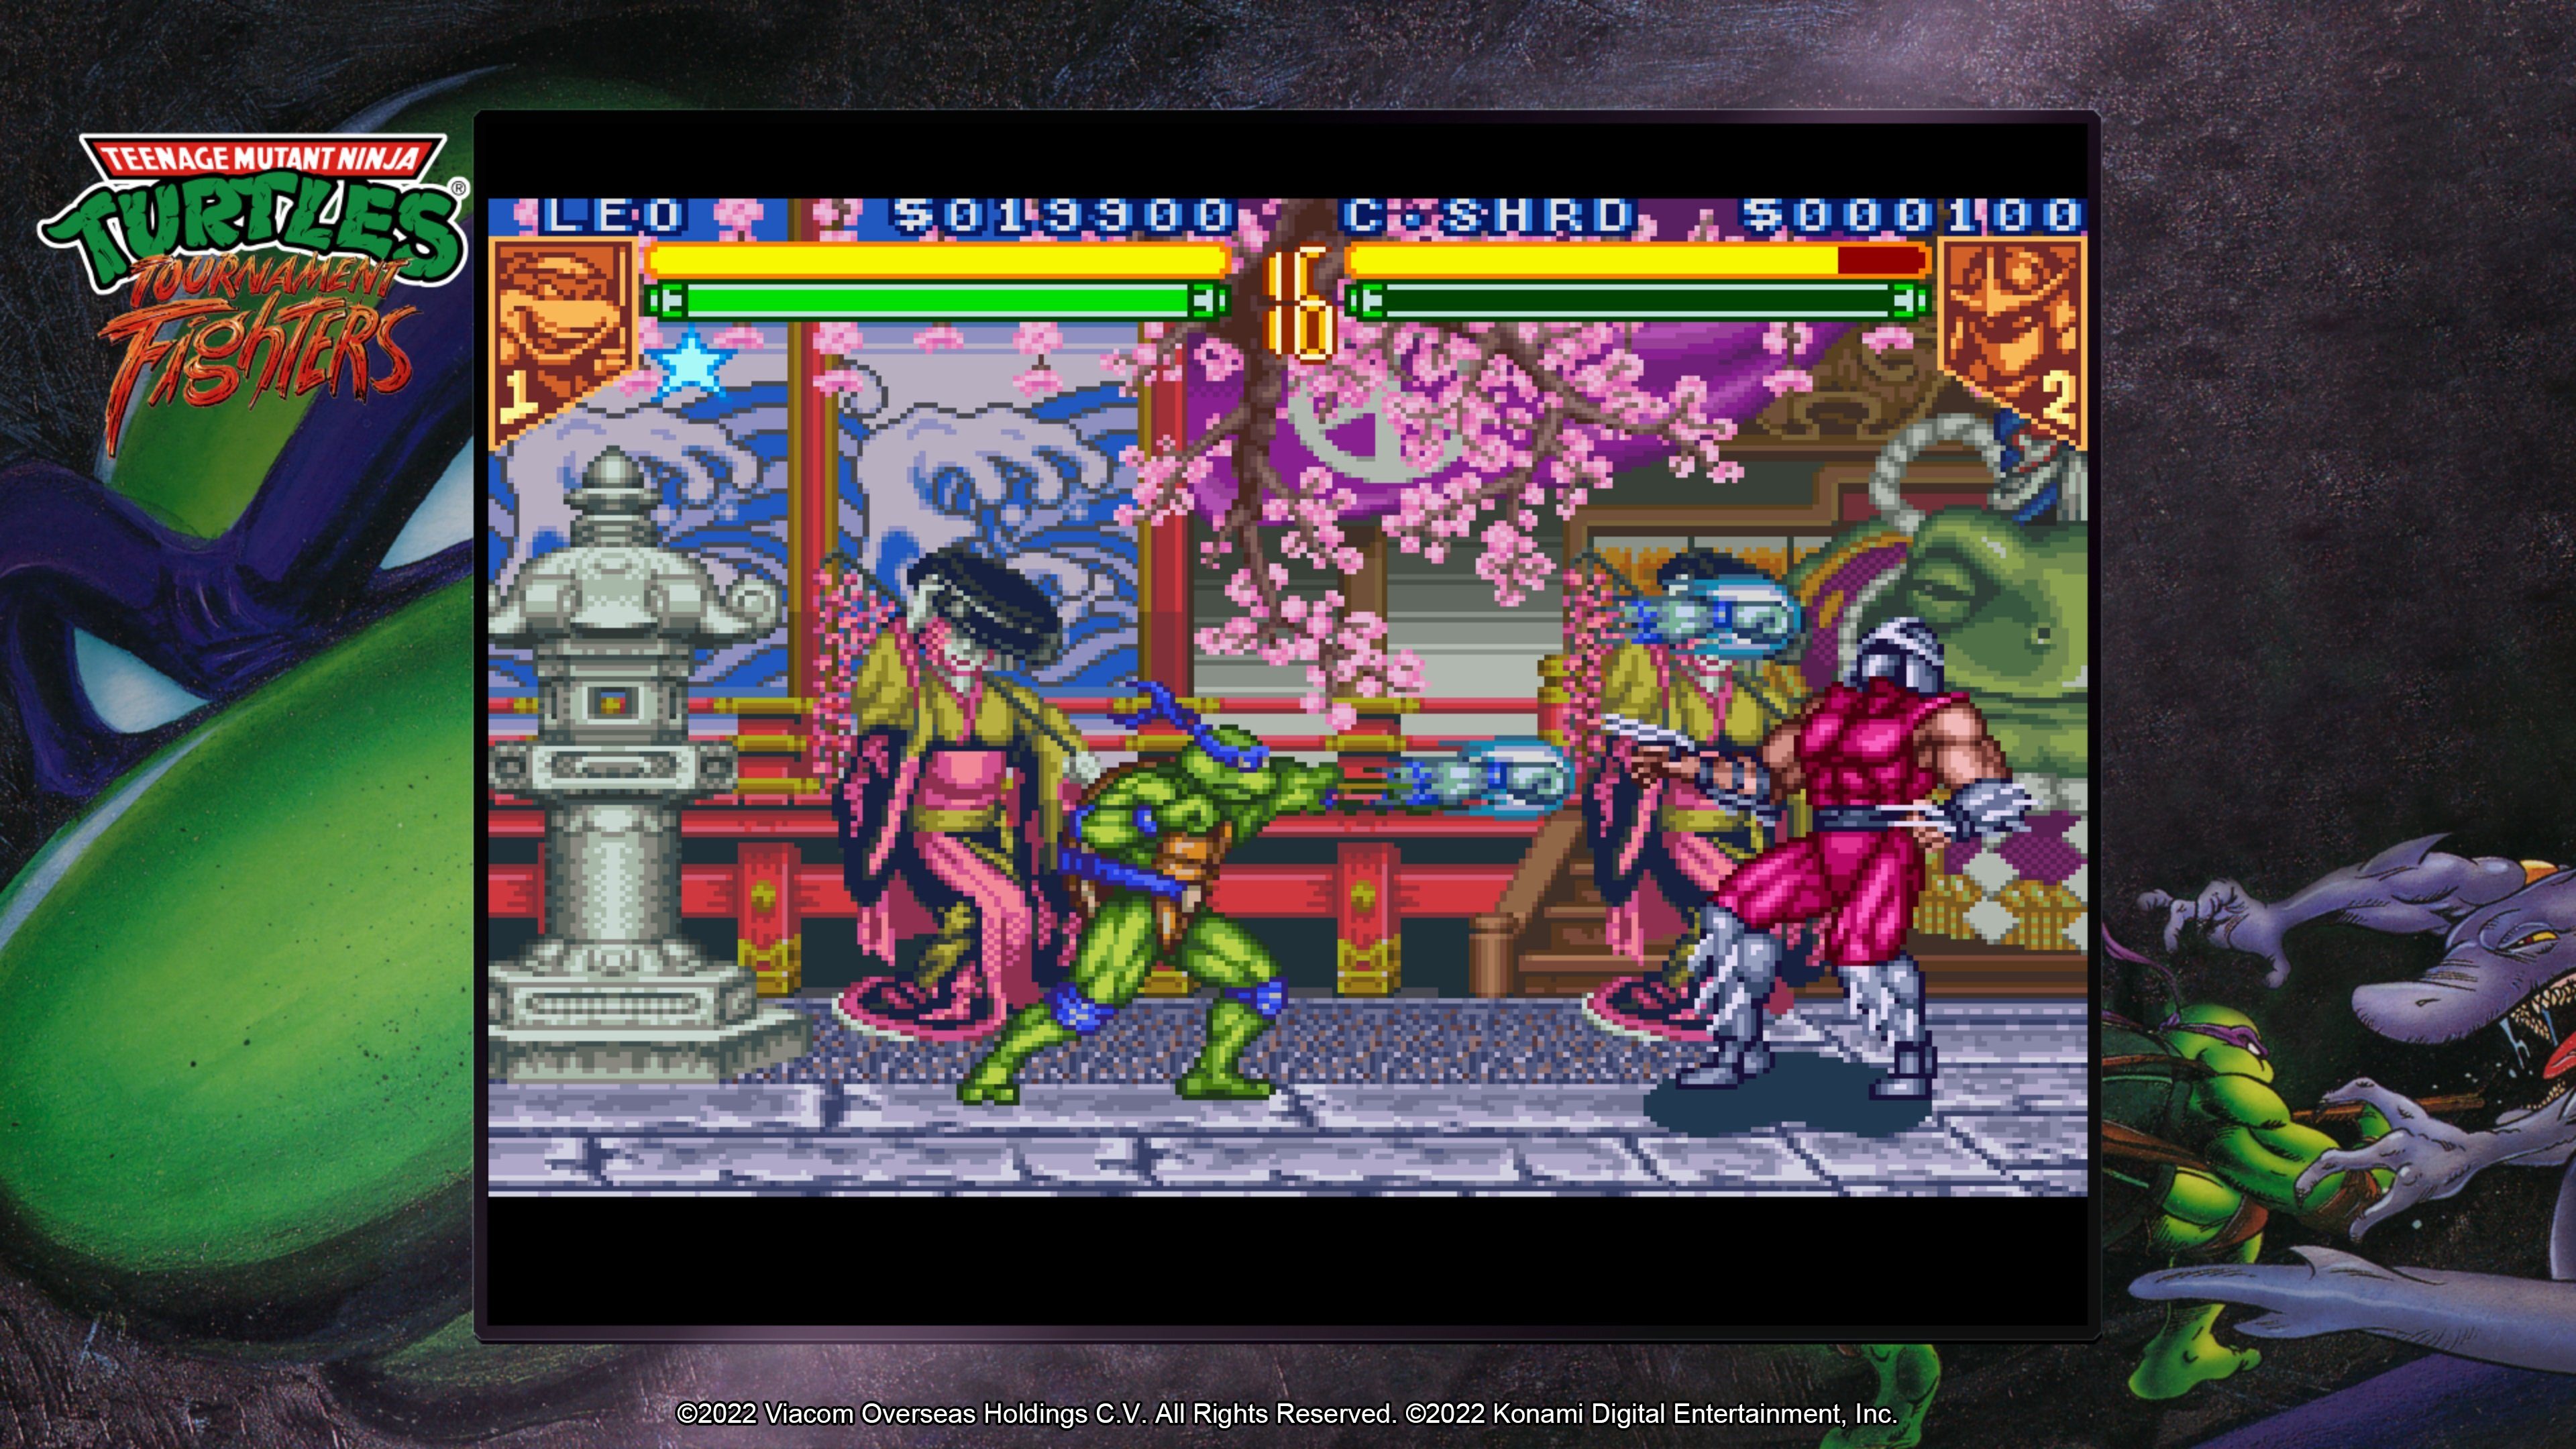 Konami Teenage Mutant The Ninja - Turtles 5 PlayStation Collection Cowabunga